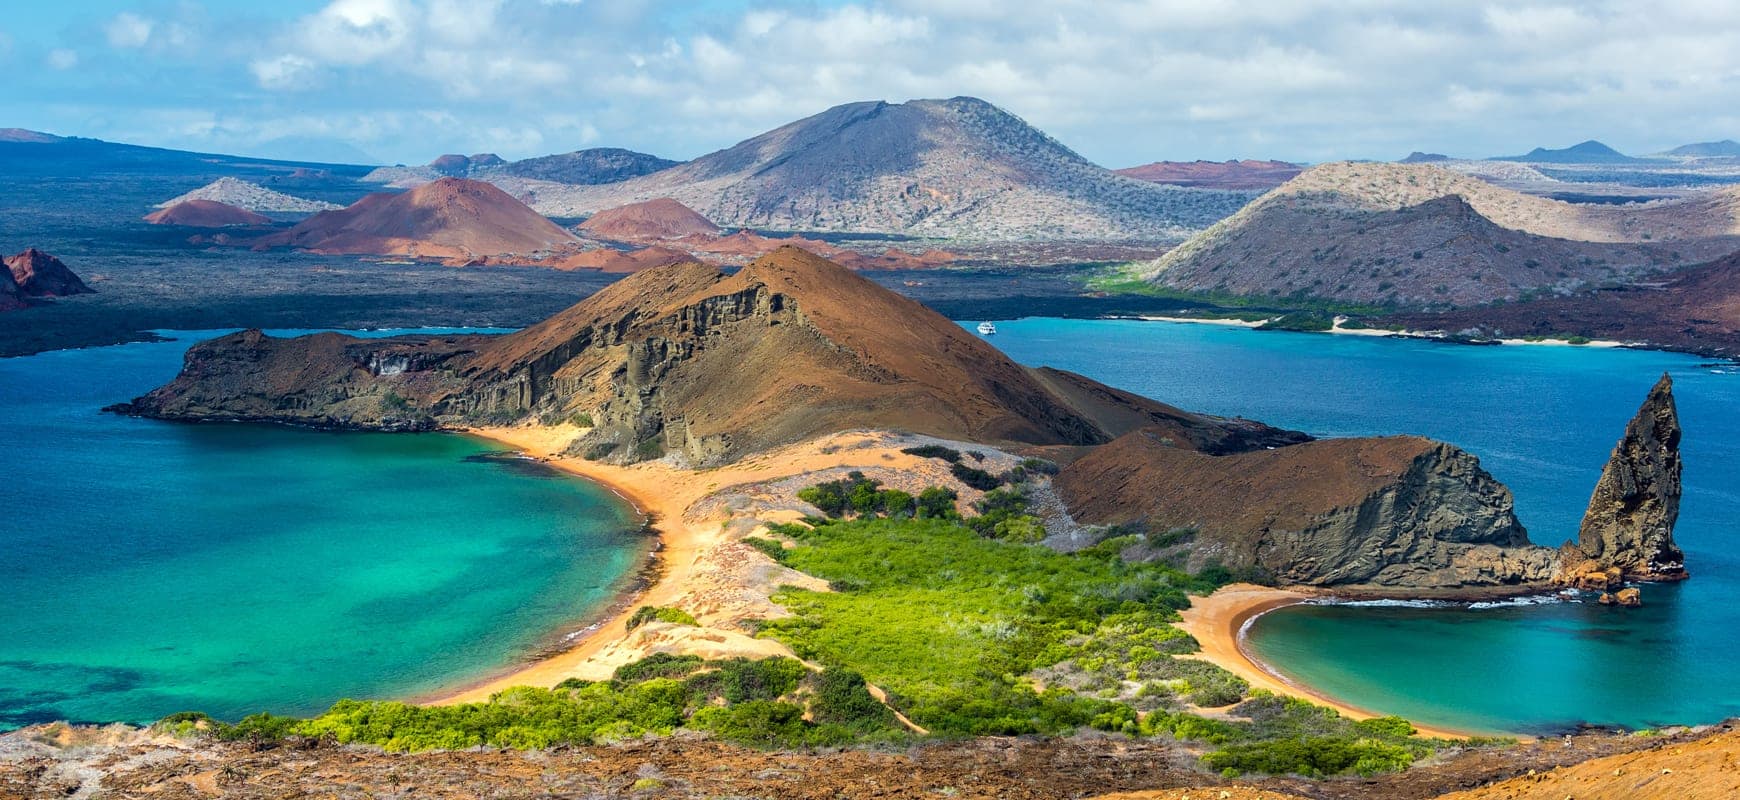 Gerätetauchen auf Galapagosinseln